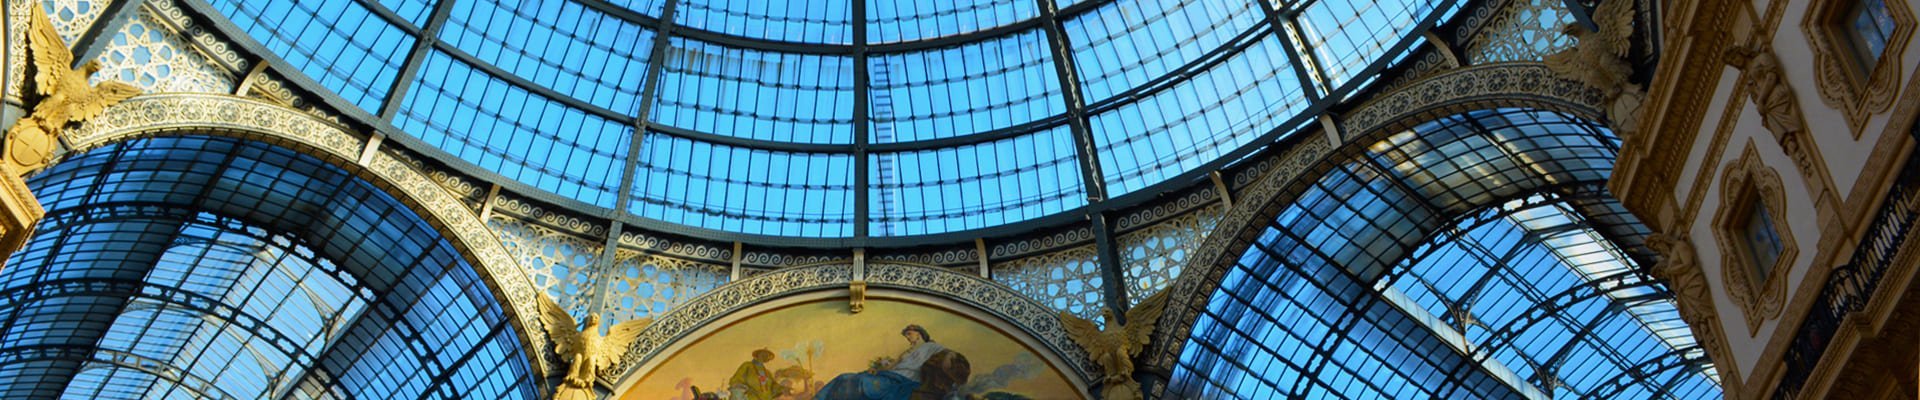 Galleria Vittorio Emanuele in Milaan, Italië